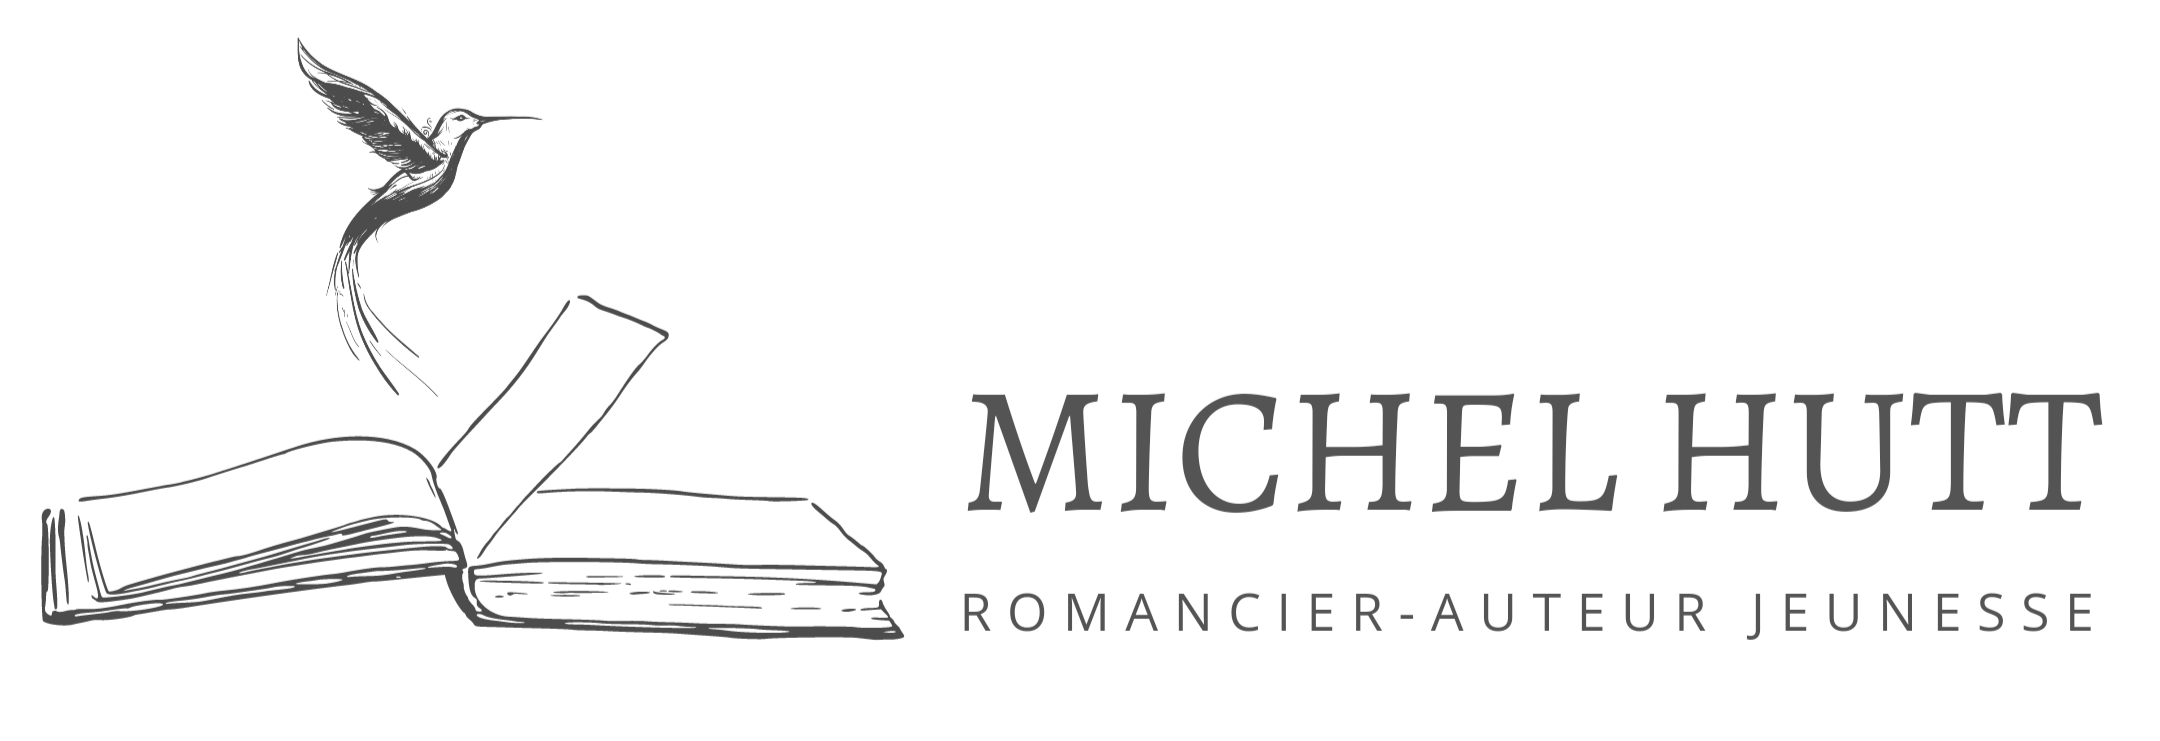 Michel HUTT - Romancier – Auteur jeunesse